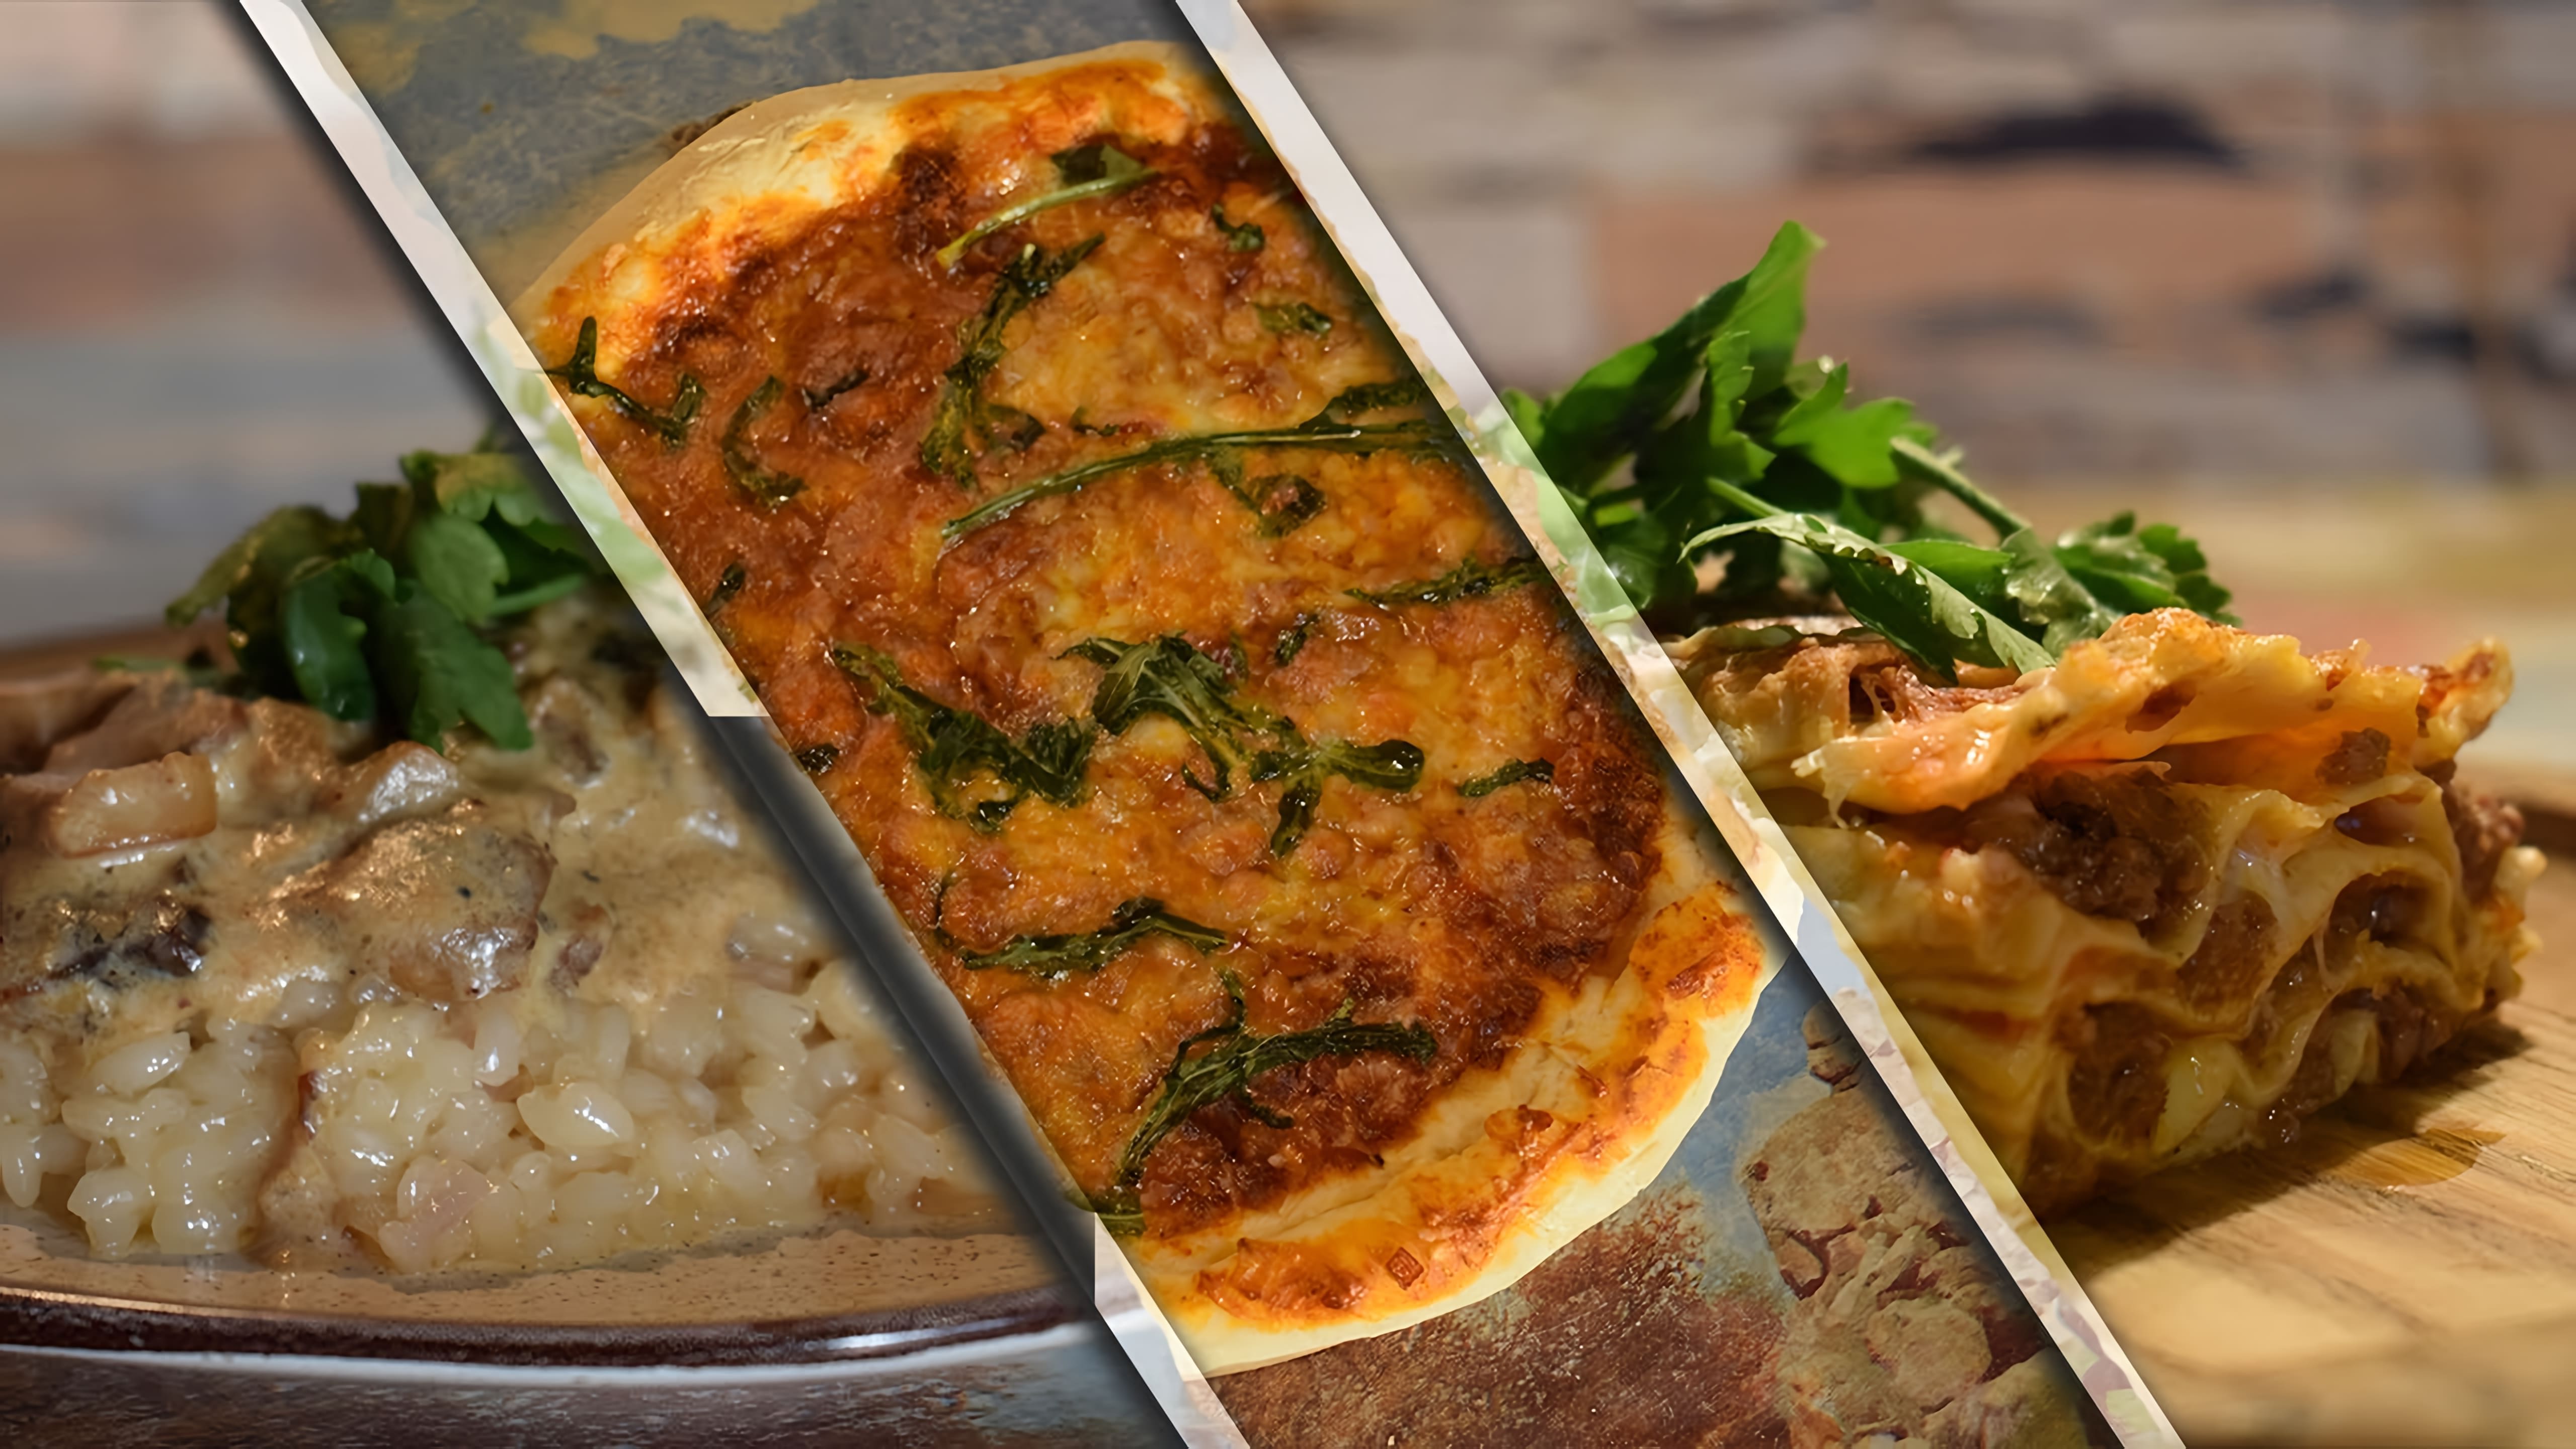 В этом видео автор показывает, как приготовить три самых вкусных блюда из Италии: пиццу, лазанью и ризотто